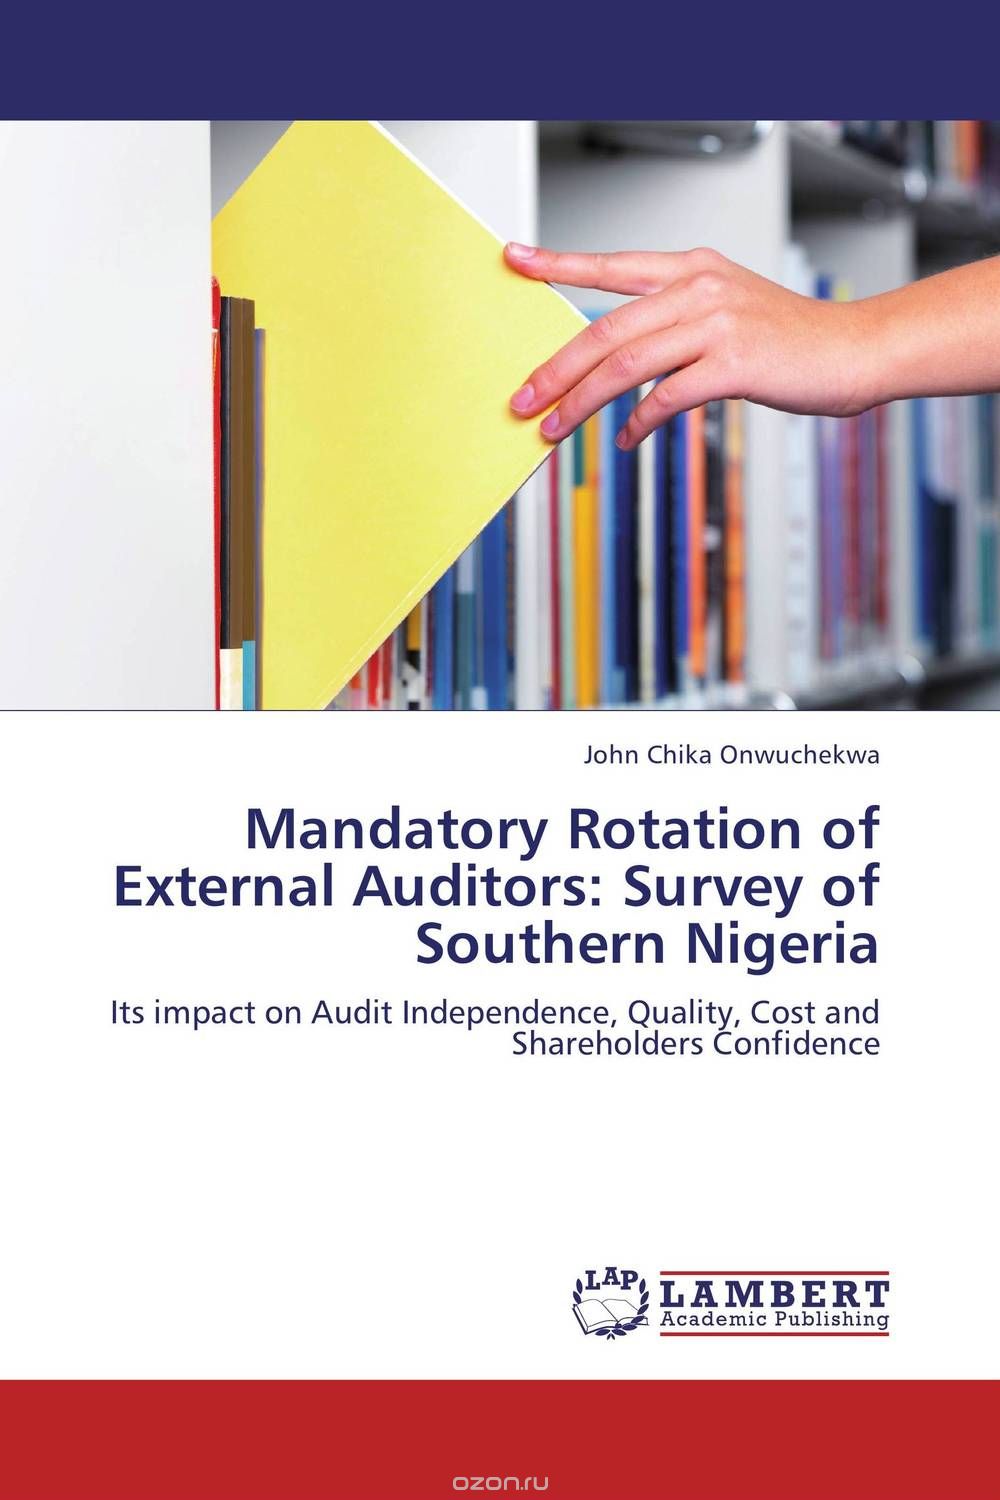 Скачать книгу "Mandatory Rotation of External Auditors: Survey of Southern Nigeria"